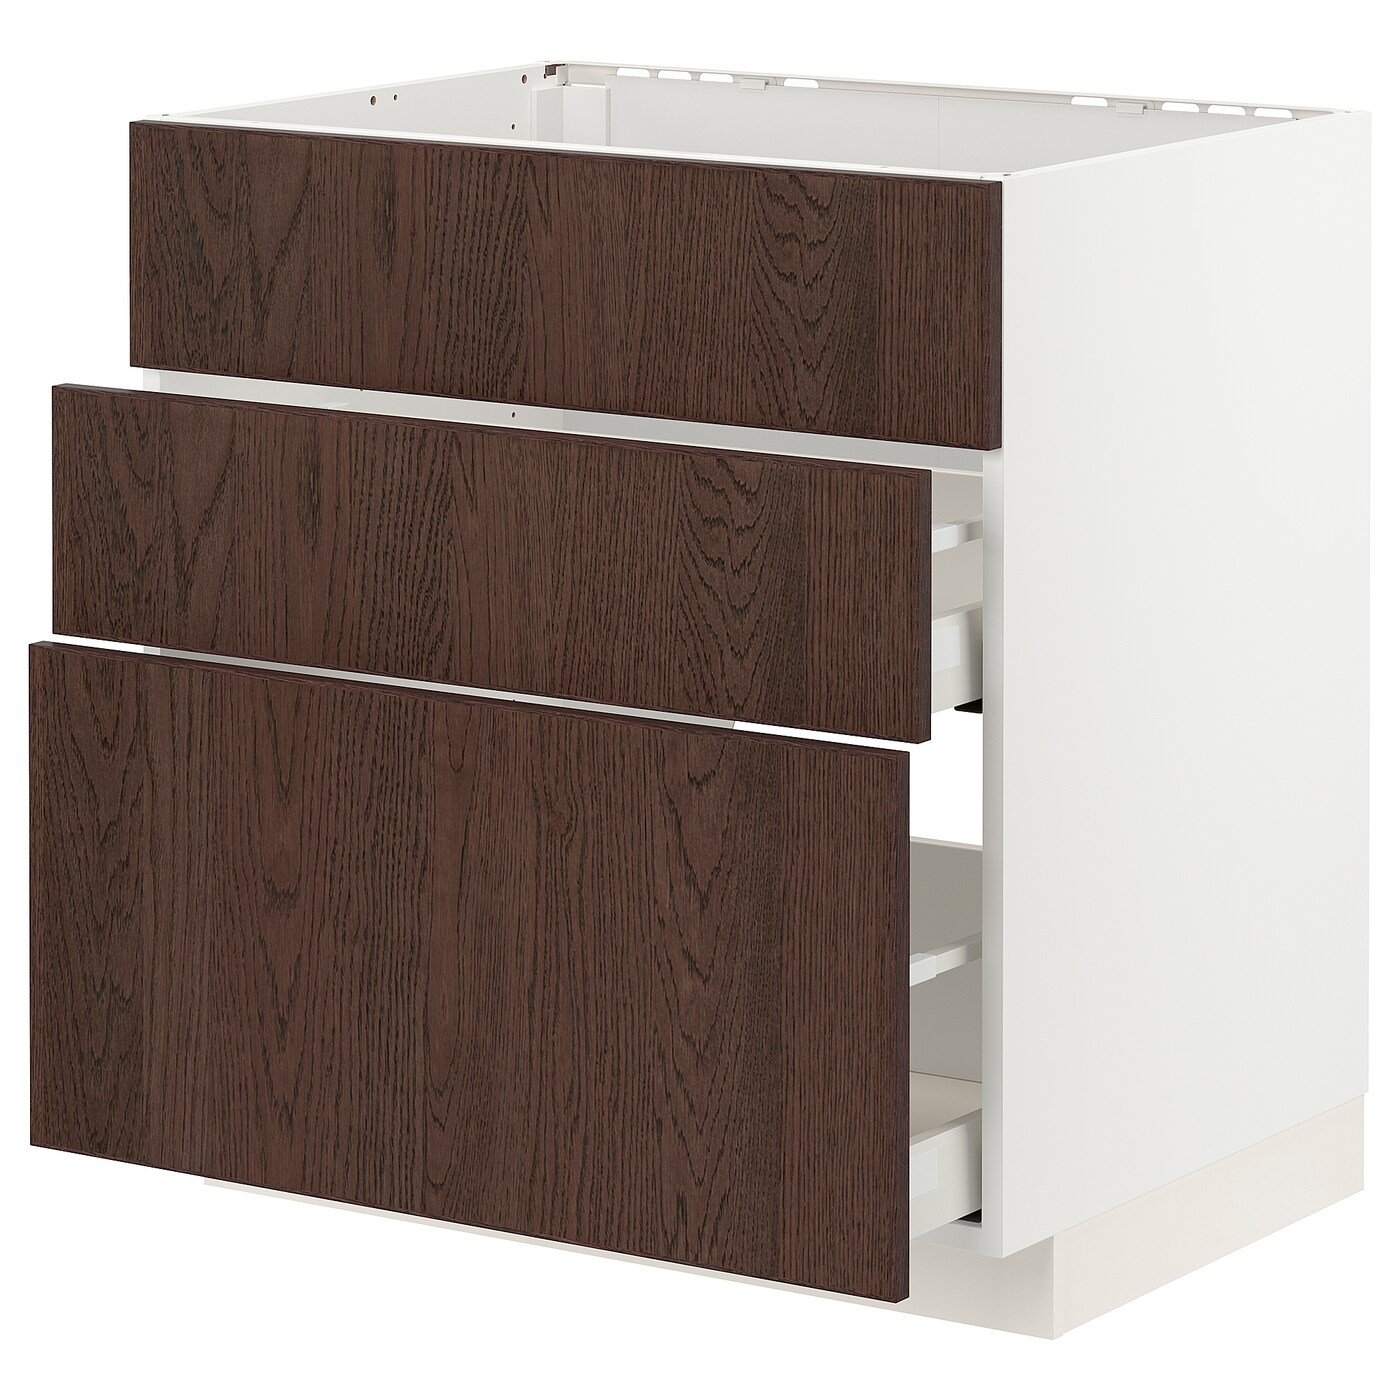 Напольный шкаф - IKEA METOD MAXIMERA, 88x62см, белый/темно-коричневый, МЕТОД МАКСИМЕРА ИКЕА